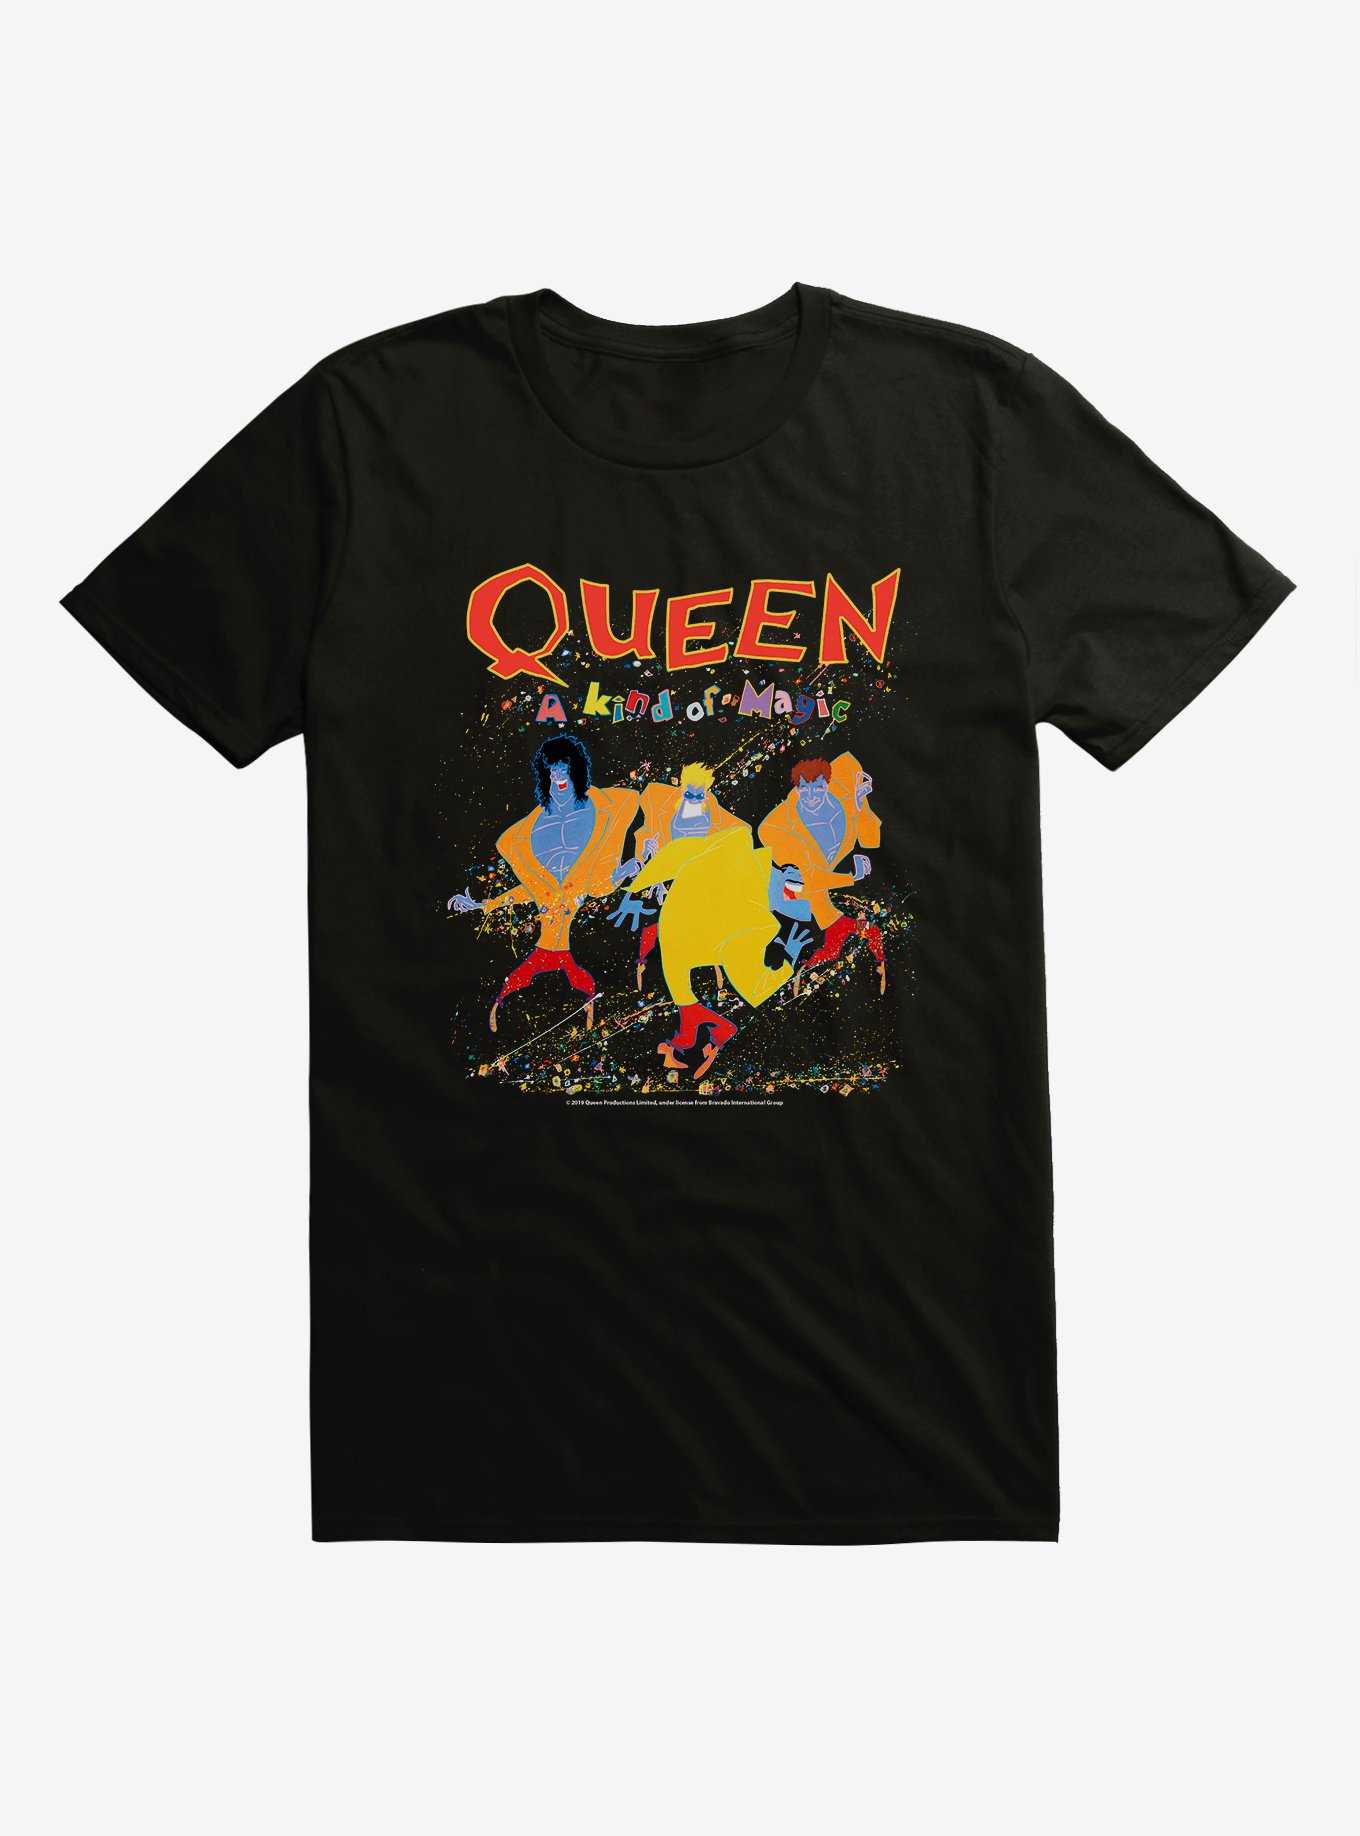 Extra Soft Queen A Kind Of Magic T-Shirt, , hi-res